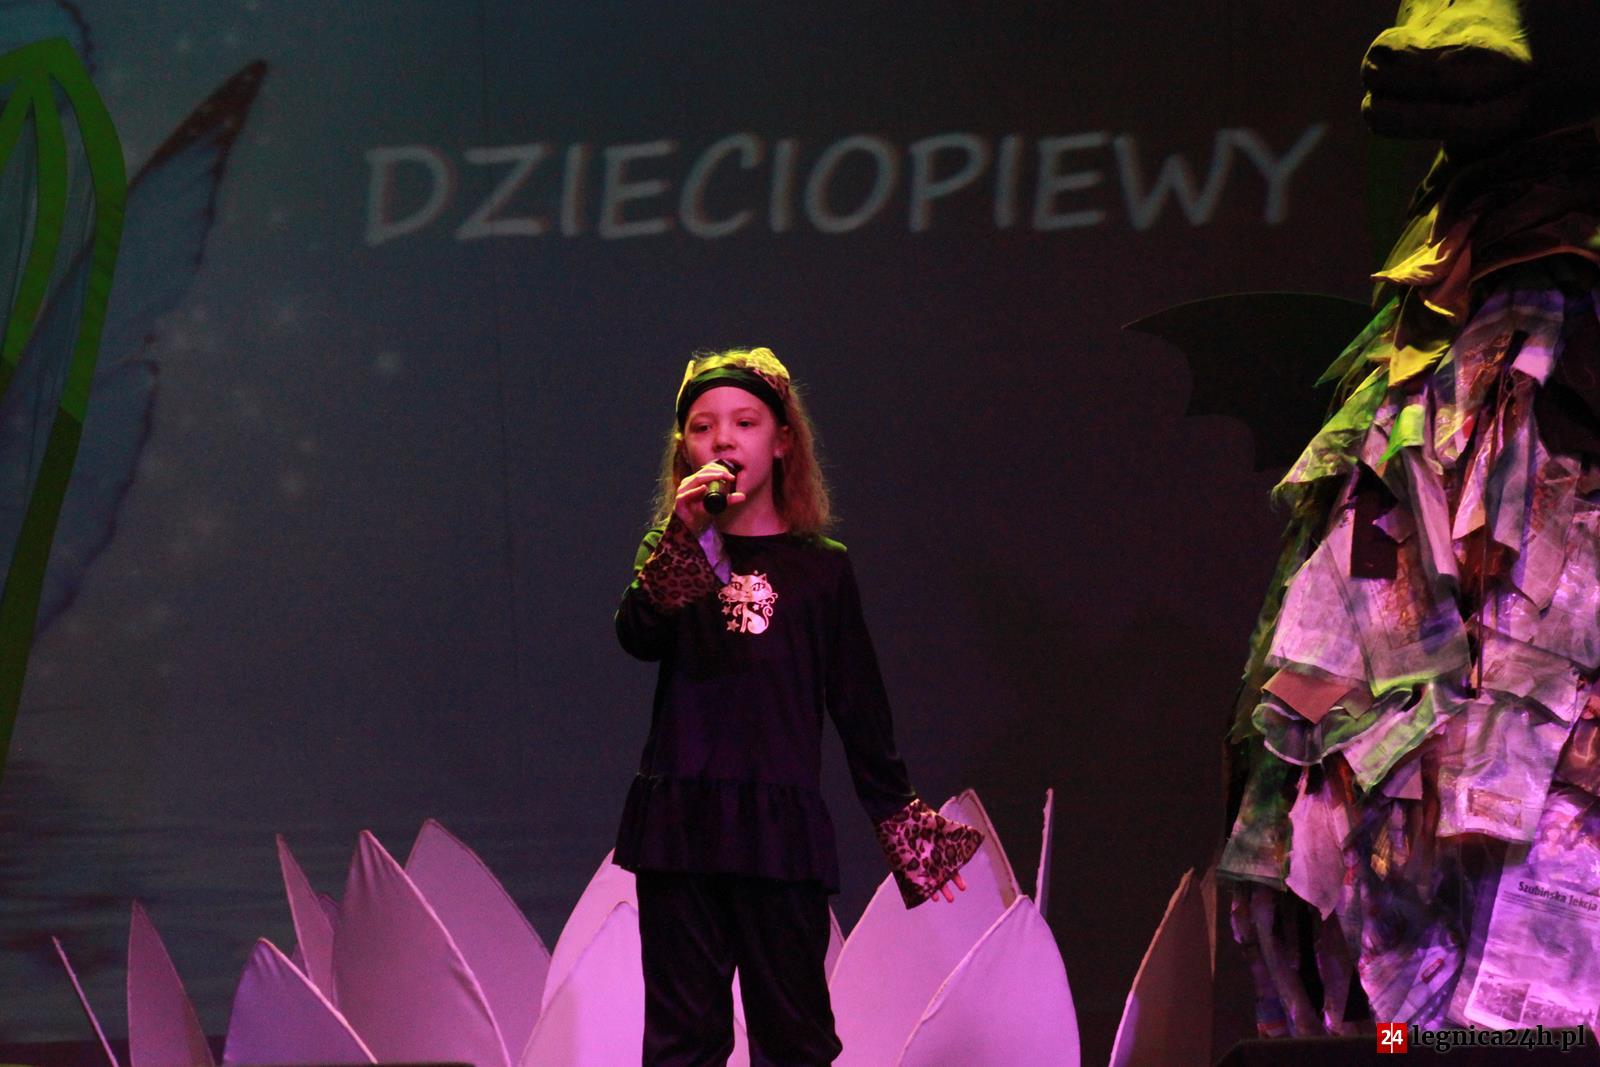 (FOTO) Dolnośląski Festiwal Piosenki Dziecięcej  „Dzieciopiewy 2018”